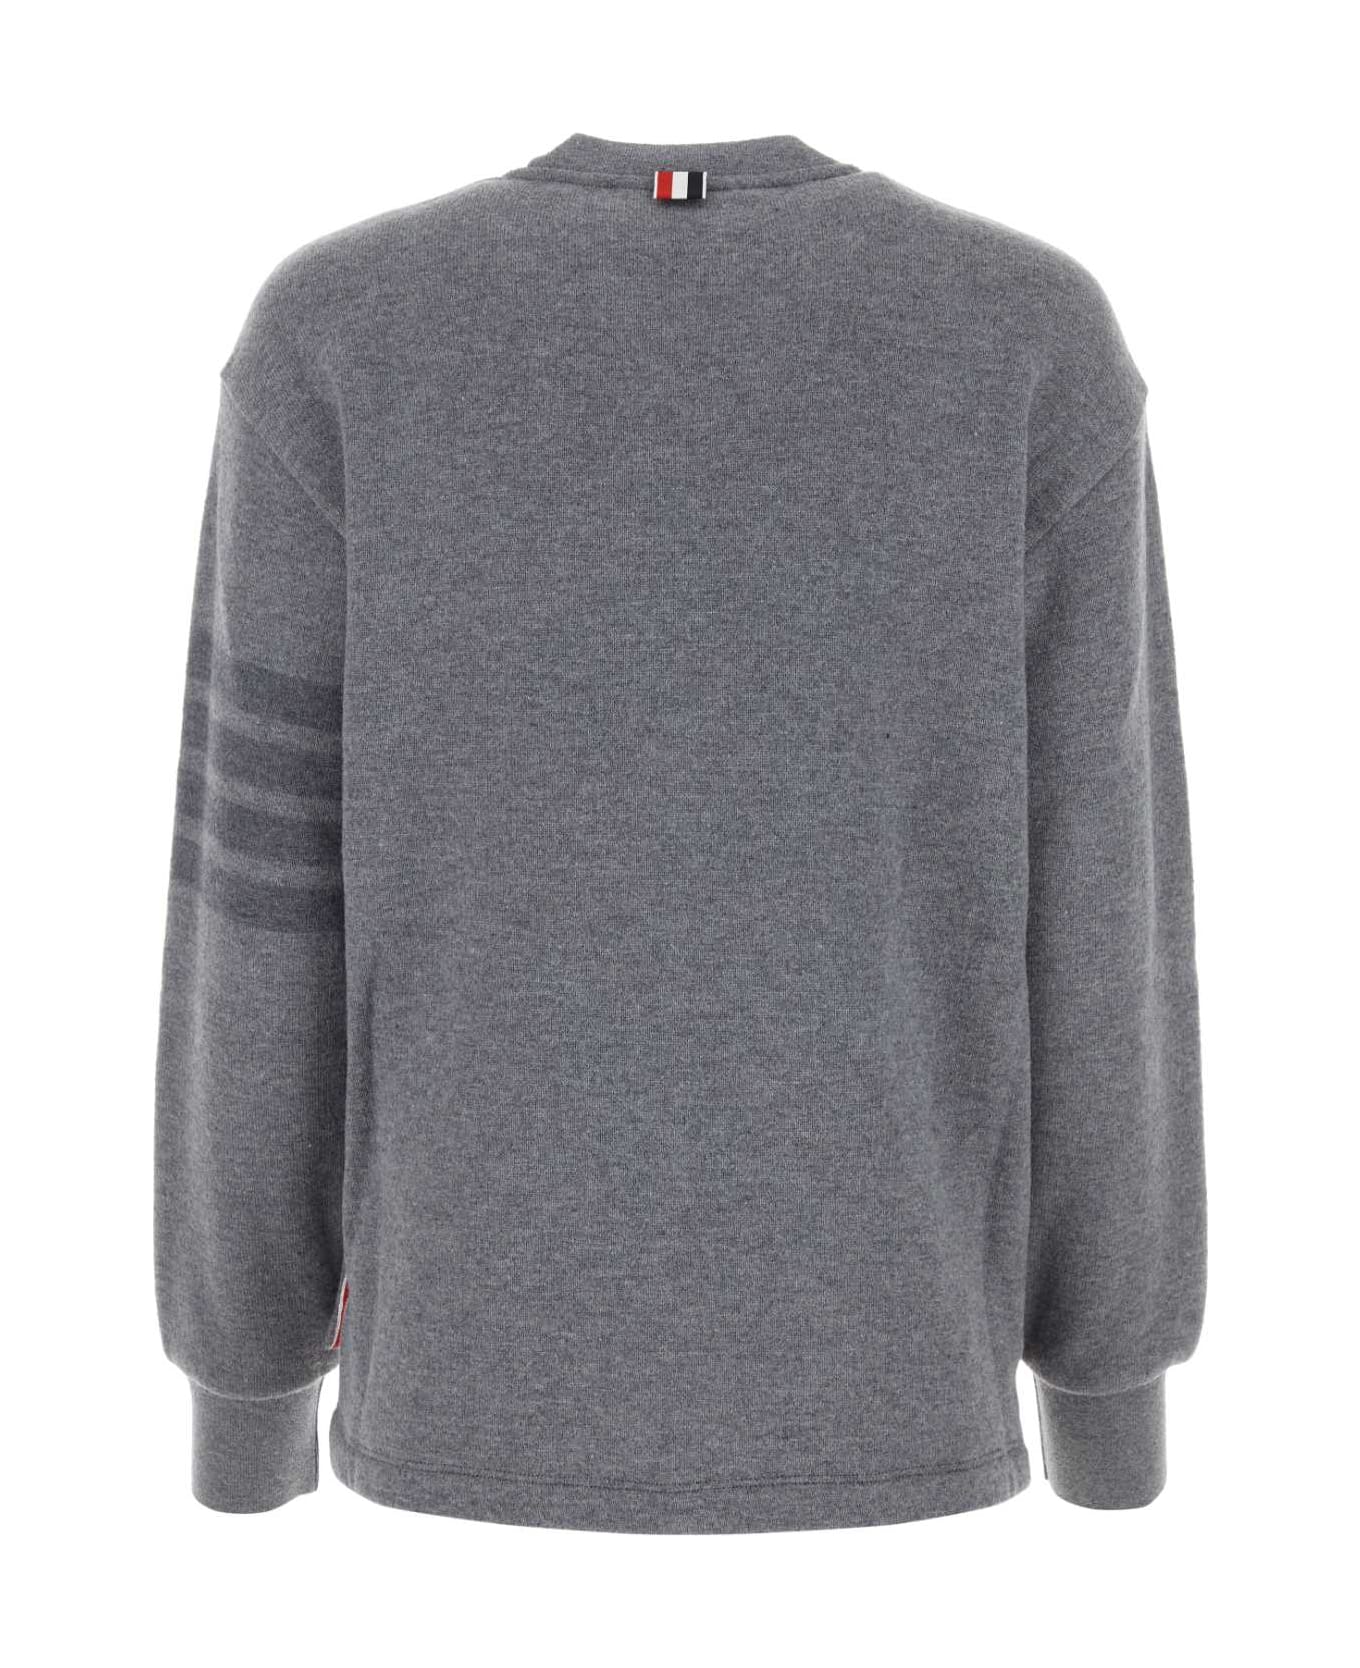 Thom Browne Grey Wool Sweatshirt - LTGREY フリース